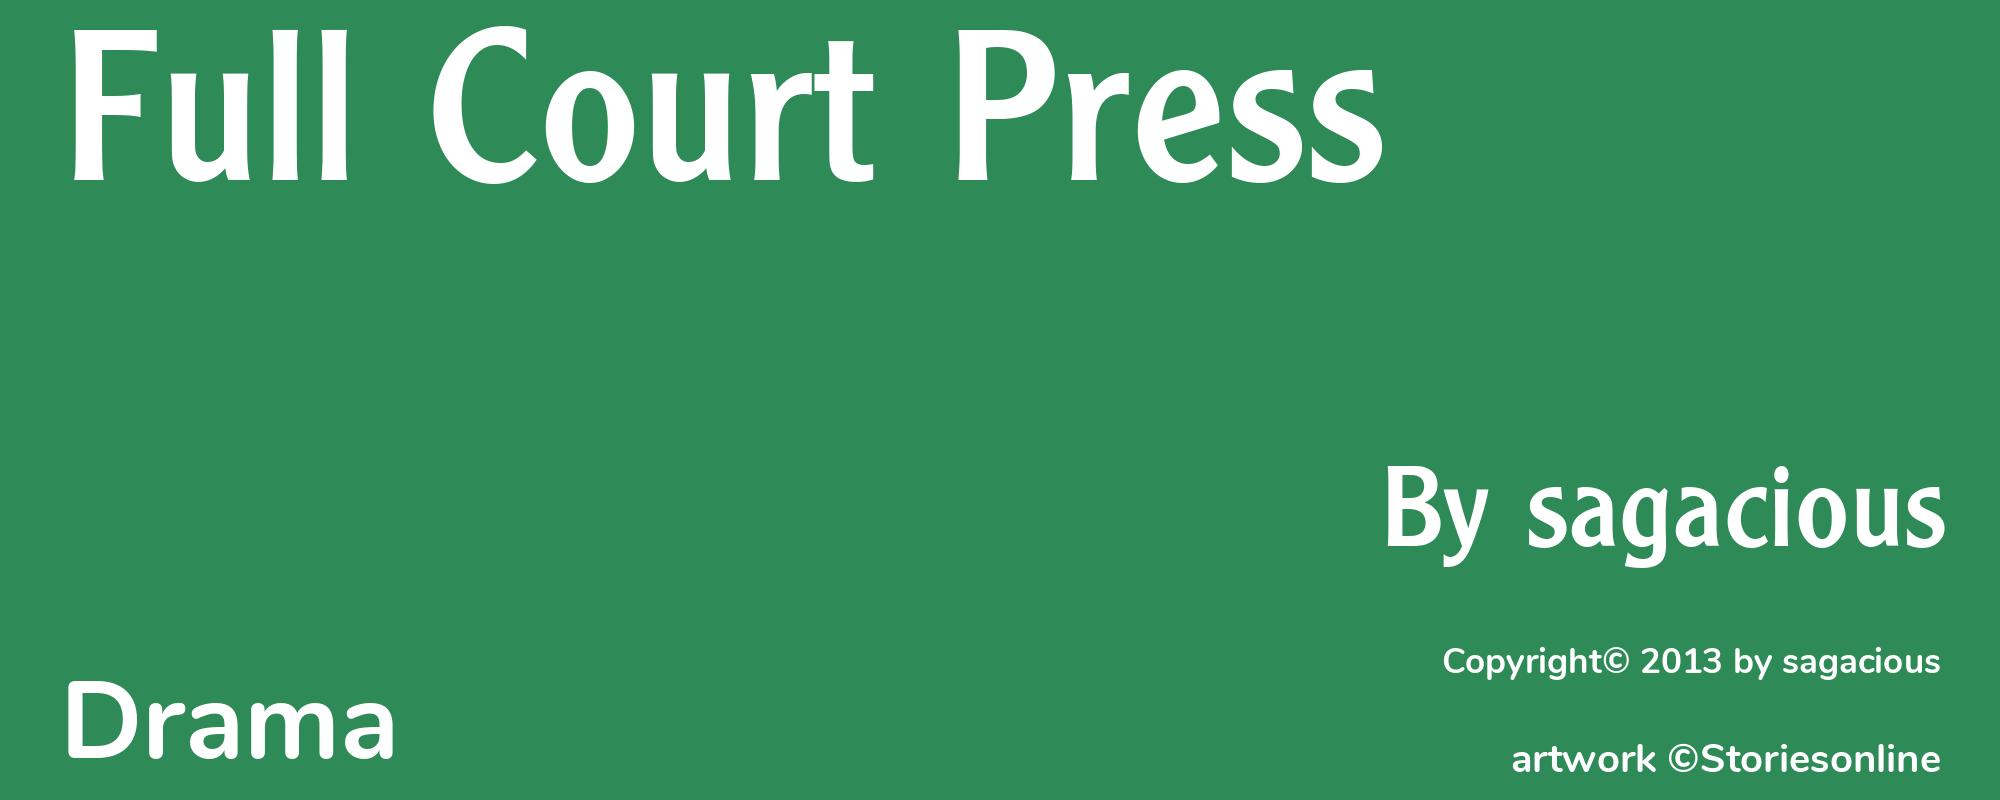 Full Court Press - Cover